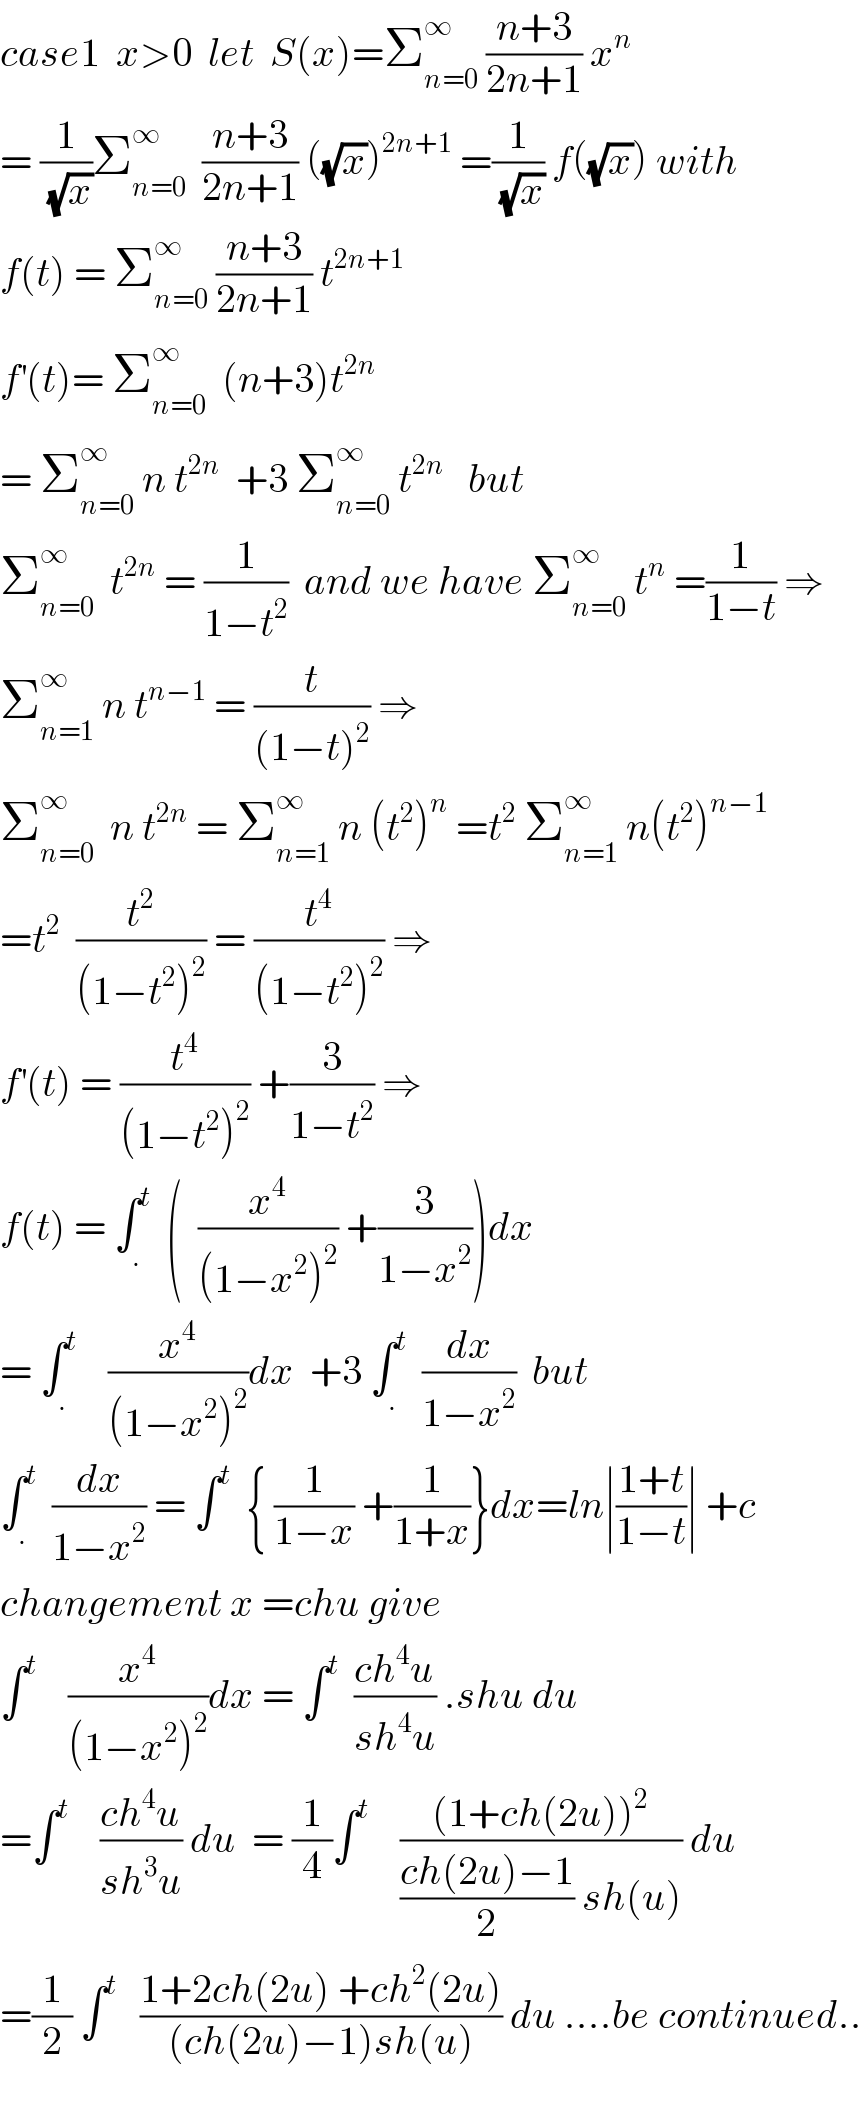 case1  x>0  let  S(x)=Σ_(n=0) ^∞  ((n+3)/(2n+1)) x^n   = (1/(√x))Σ_(n=0) ^∞   ((n+3)/(2n+1)) ((√x))^(2n+1)  =(1/(√x)) f((√x)) with  f(t) = Σ_(n=0) ^∞  ((n+3)/(2n+1)) t^(2n+1)   f^′ (t)= Σ_(n=0) ^∞   (n+3)t^(2n)   = Σ_(n=0) ^∞  n t^(2n)   +3 Σ_(n=0) ^∞  t^(2n)    but  Σ_(n=0) ^∞   t^(2n)  = (1/(1−t^2 ))  and we have Σ_(n=0) ^∞  t^n  =(1/(1−t)) ⇒  Σ_(n=1) ^∞  n t^(n−1)  = (t/((1−t)^2 )) ⇒  Σ_(n=0) ^∞   n t^(2n)  = Σ_(n=1) ^∞  n (t^2 )^n  =t^2  Σ_(n=1) ^∞  n(t^2 )^(n−1)   =t^2   (t^2 /((1−t^2 )^2 )) = (t^4 /((1−t^2 )^2 )) ⇒  f^′ (t) = (t^4 /((1−t^2 )^2 )) +(3/(1−t^2 )) ⇒  f(t) = ∫_. ^t   (  (x^4 /((1−x^2 )^2 )) +(3/(1−x^2 )))dx  = ∫_. ^t     (x^4 /((1−x^2 )^2 ))dx  +3 ∫_. ^t   (dx/(1−x^2 ))  but  ∫_. ^t   (dx/(1−x^2 )) = ∫^t   { (1/(1−x)) +(1/(1+x))}dx=ln∣((1+t)/(1−t))∣ +c  changement x =chu give  ∫^t     (x^4 /((1−x^2 )^2 ))dx = ∫^t   ((ch^4 u)/(sh^4 u)) .shu du  =∫^t     ((ch^4 u)/(sh^3 u)) du  = (1/4)∫^t     (((1+ch(2u))^2 )/(((ch(2u)−1)/2) sh(u))) du  =(1/2) ∫^t    ((1+2ch(2u) +ch^2 (2u))/((ch(2u)−1)sh(u))) du ....be continued..    